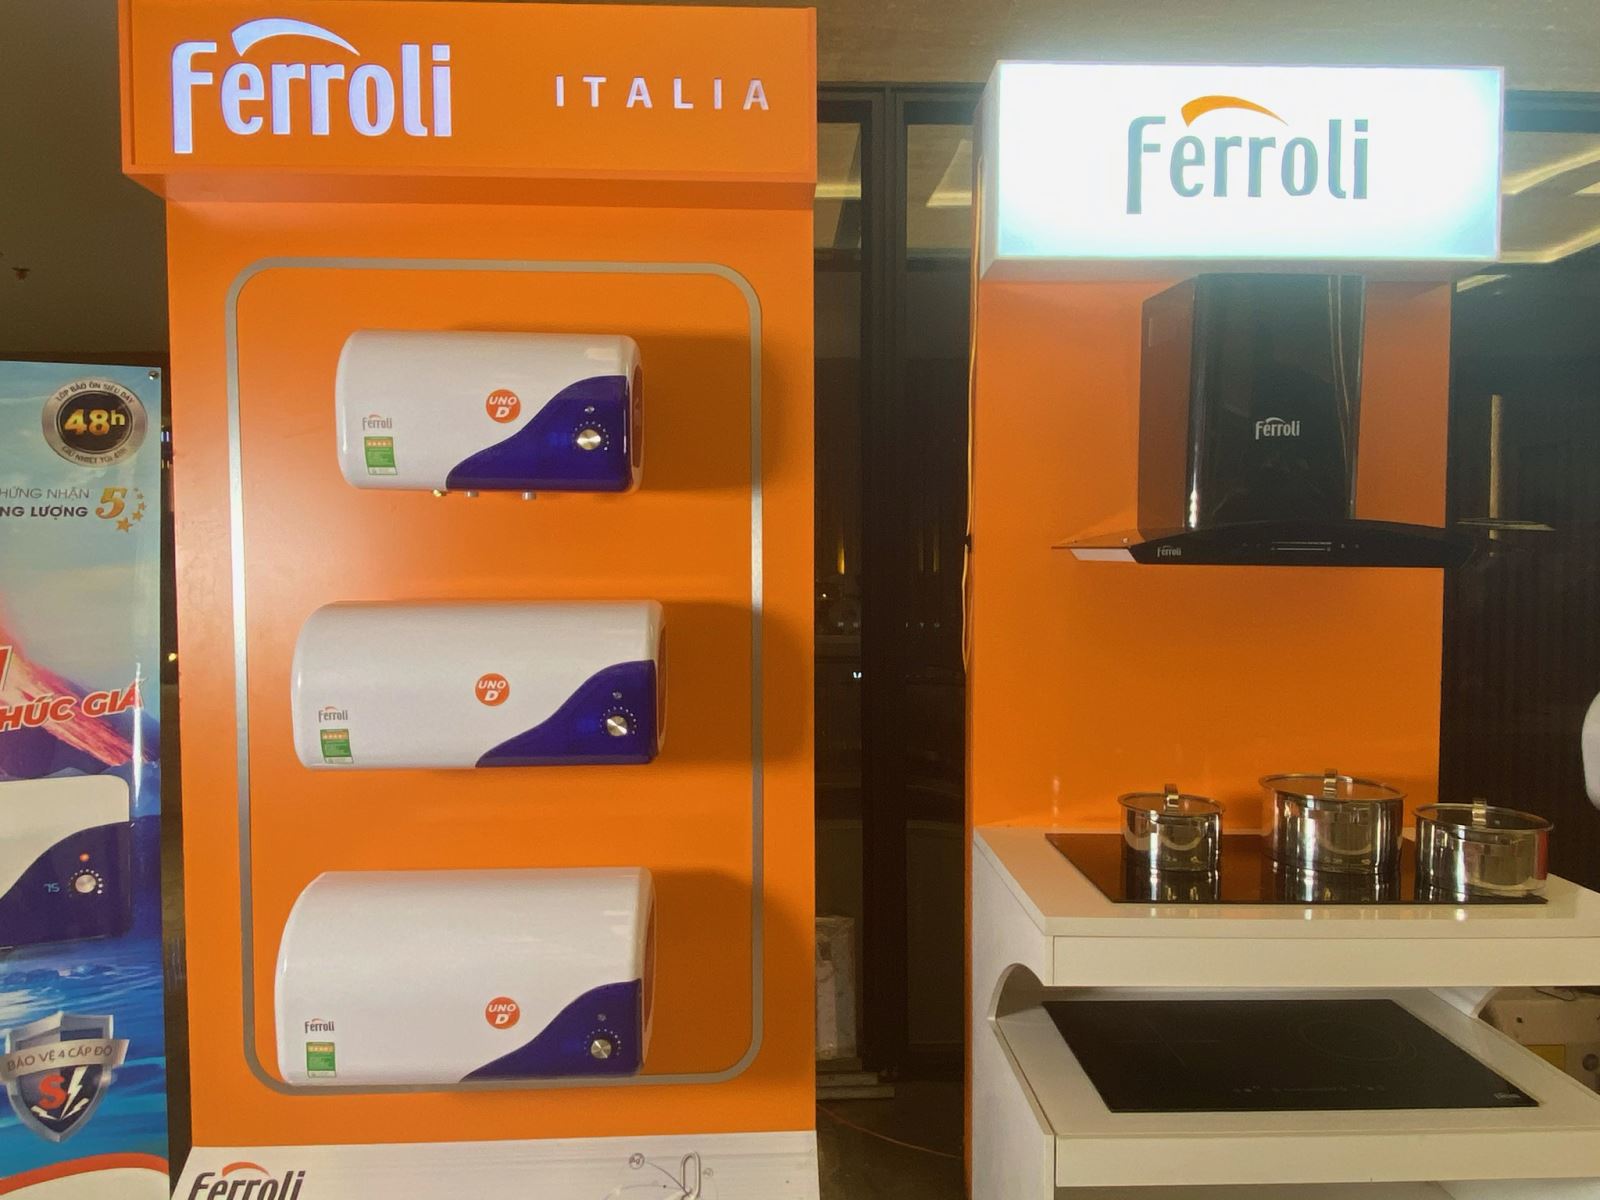 Ferroli UNO - bình nóng lạnh model mới, vô địch trong phân khúc giá - 1